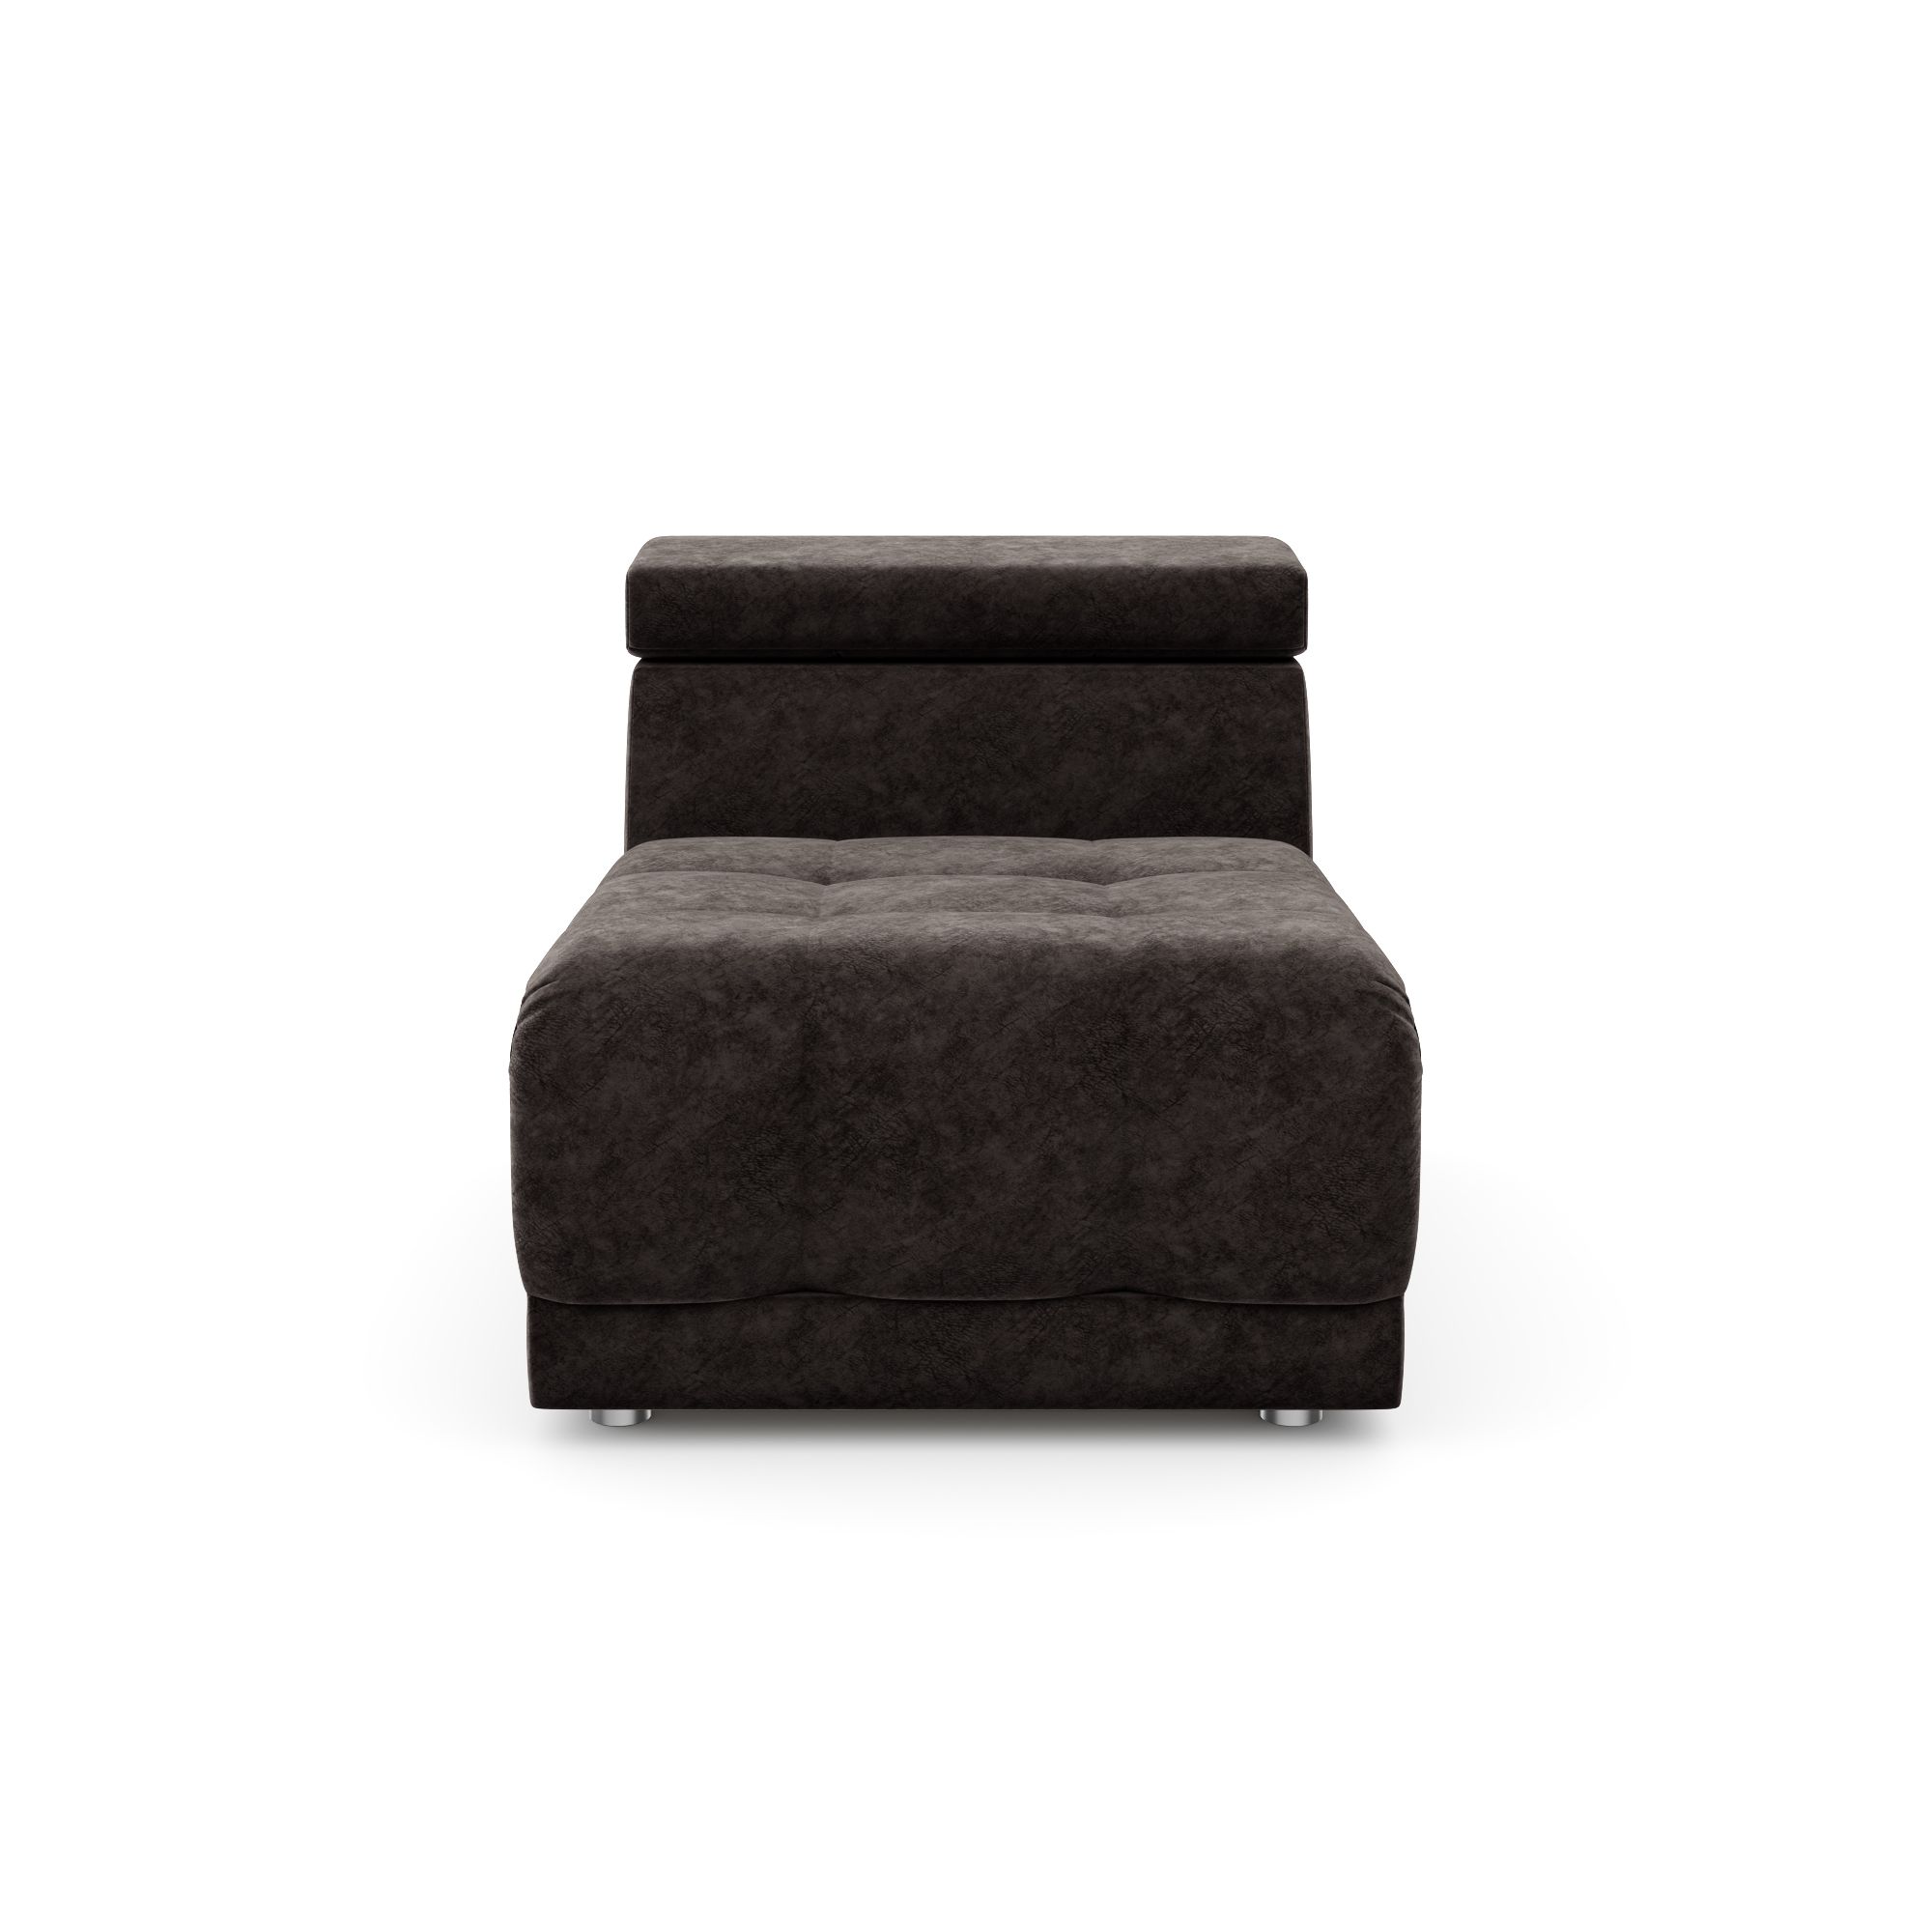 Модуль дивана Флорида кресло без подлокотников, кФЛ03.лм11.11у